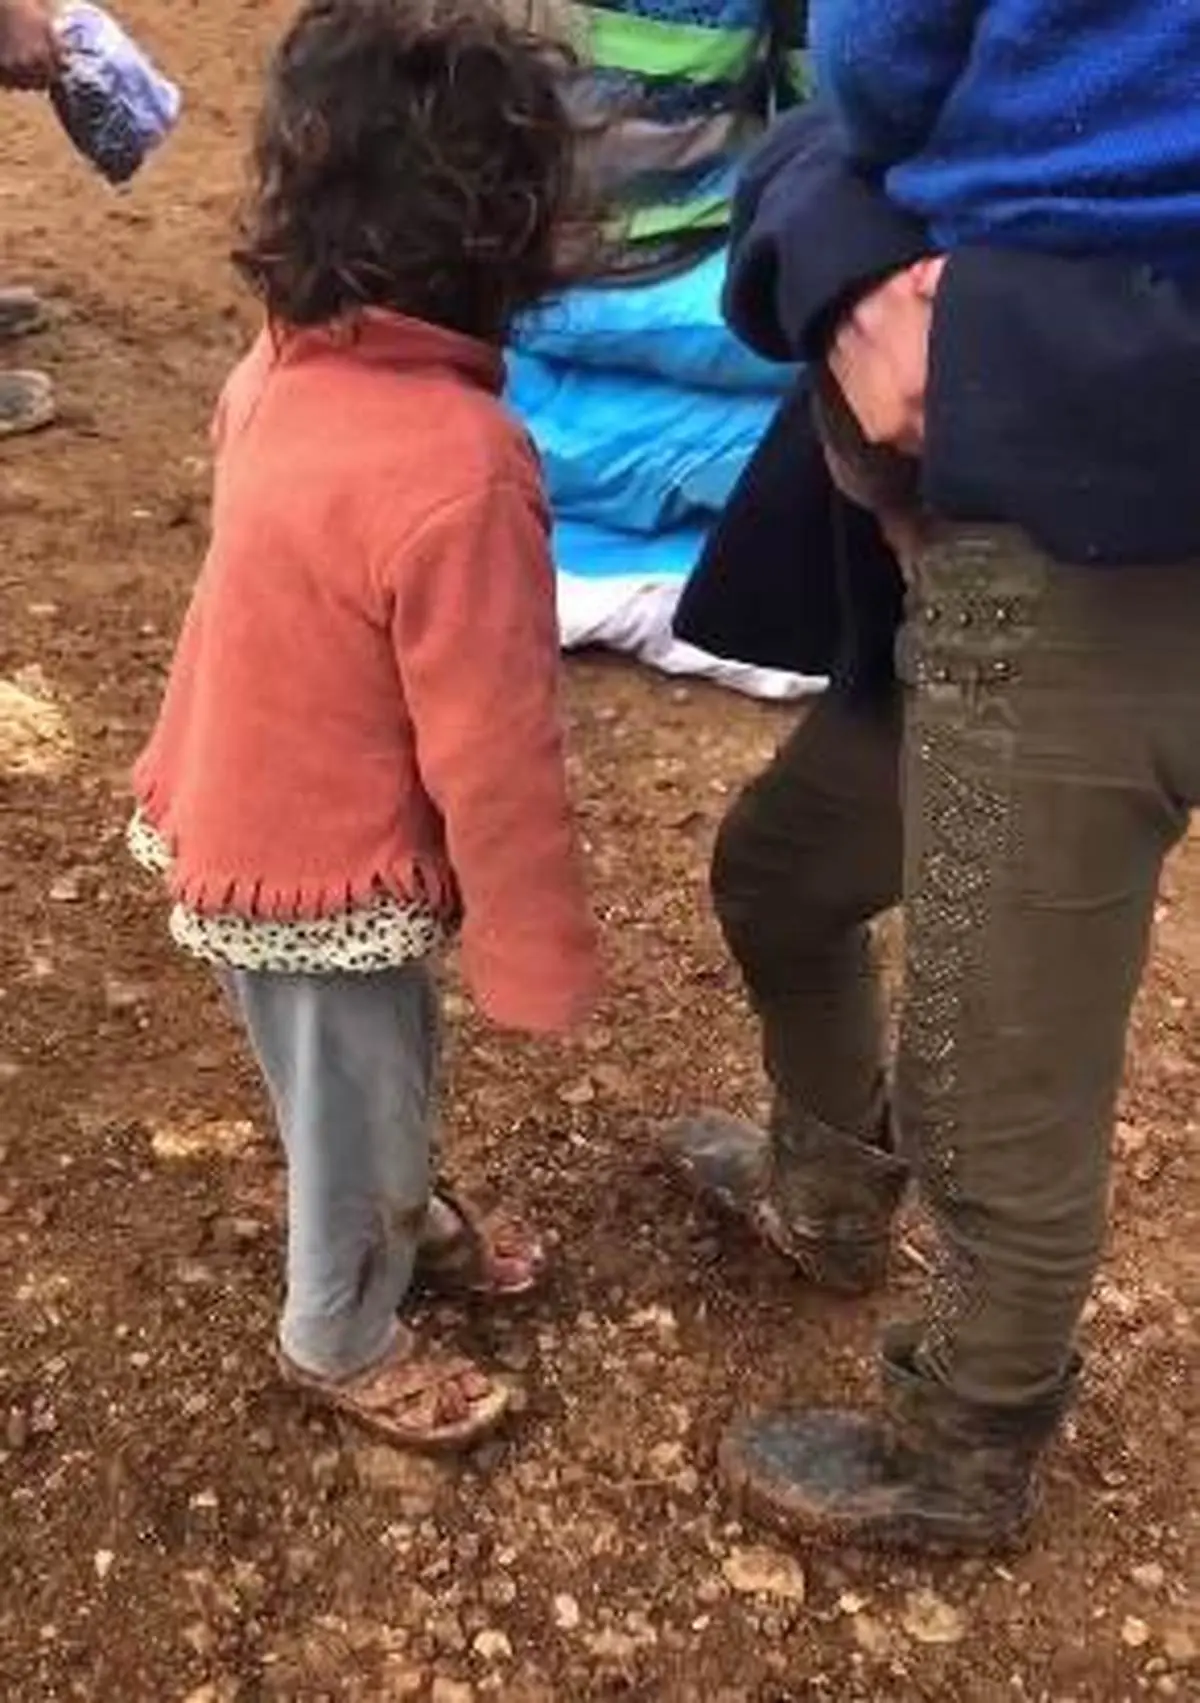 لرز و‌سرمای کودک آواره سوری در یکی از اردوگاه‌های شمال این کشور + ویدئو 